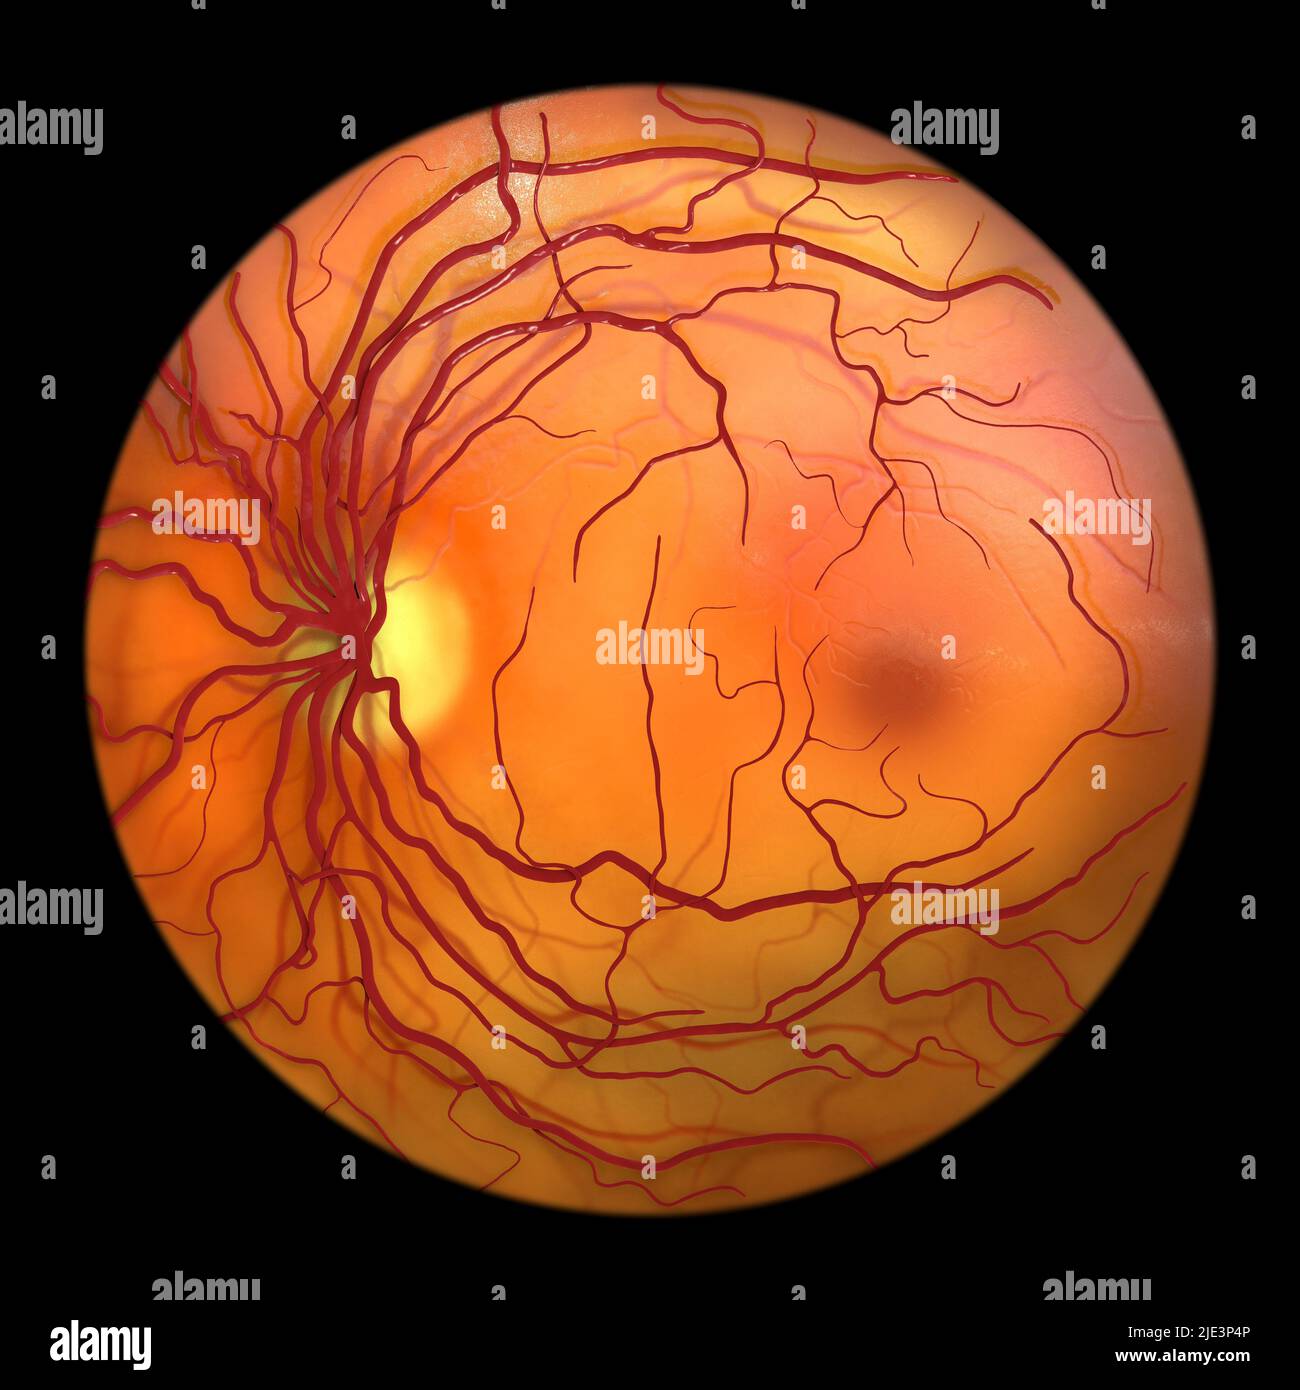 Retina normale, immagine oftalmoscopica, illustrazione. La retina è la membrana sensibile alla luce che allinea la parte posteriore dell'occhio. I vasi sanguigni (rossi) irradiano dal disco ottico (giallo, sinistro). Il disco ottico è l'area in cui il nervo ottico e i vasi sanguigni entrano nell'occhio. Per questo motivo, non ha celle fotosensibili ed è la causa del punto cieco. L'area rossa scura al centro a destra è la macula. Questa è la regione della retina con la più alta concentrazione di cellule sensibili alla luce, ed è responsabile della visione nitida al centro del campo visivo. Foto Stock